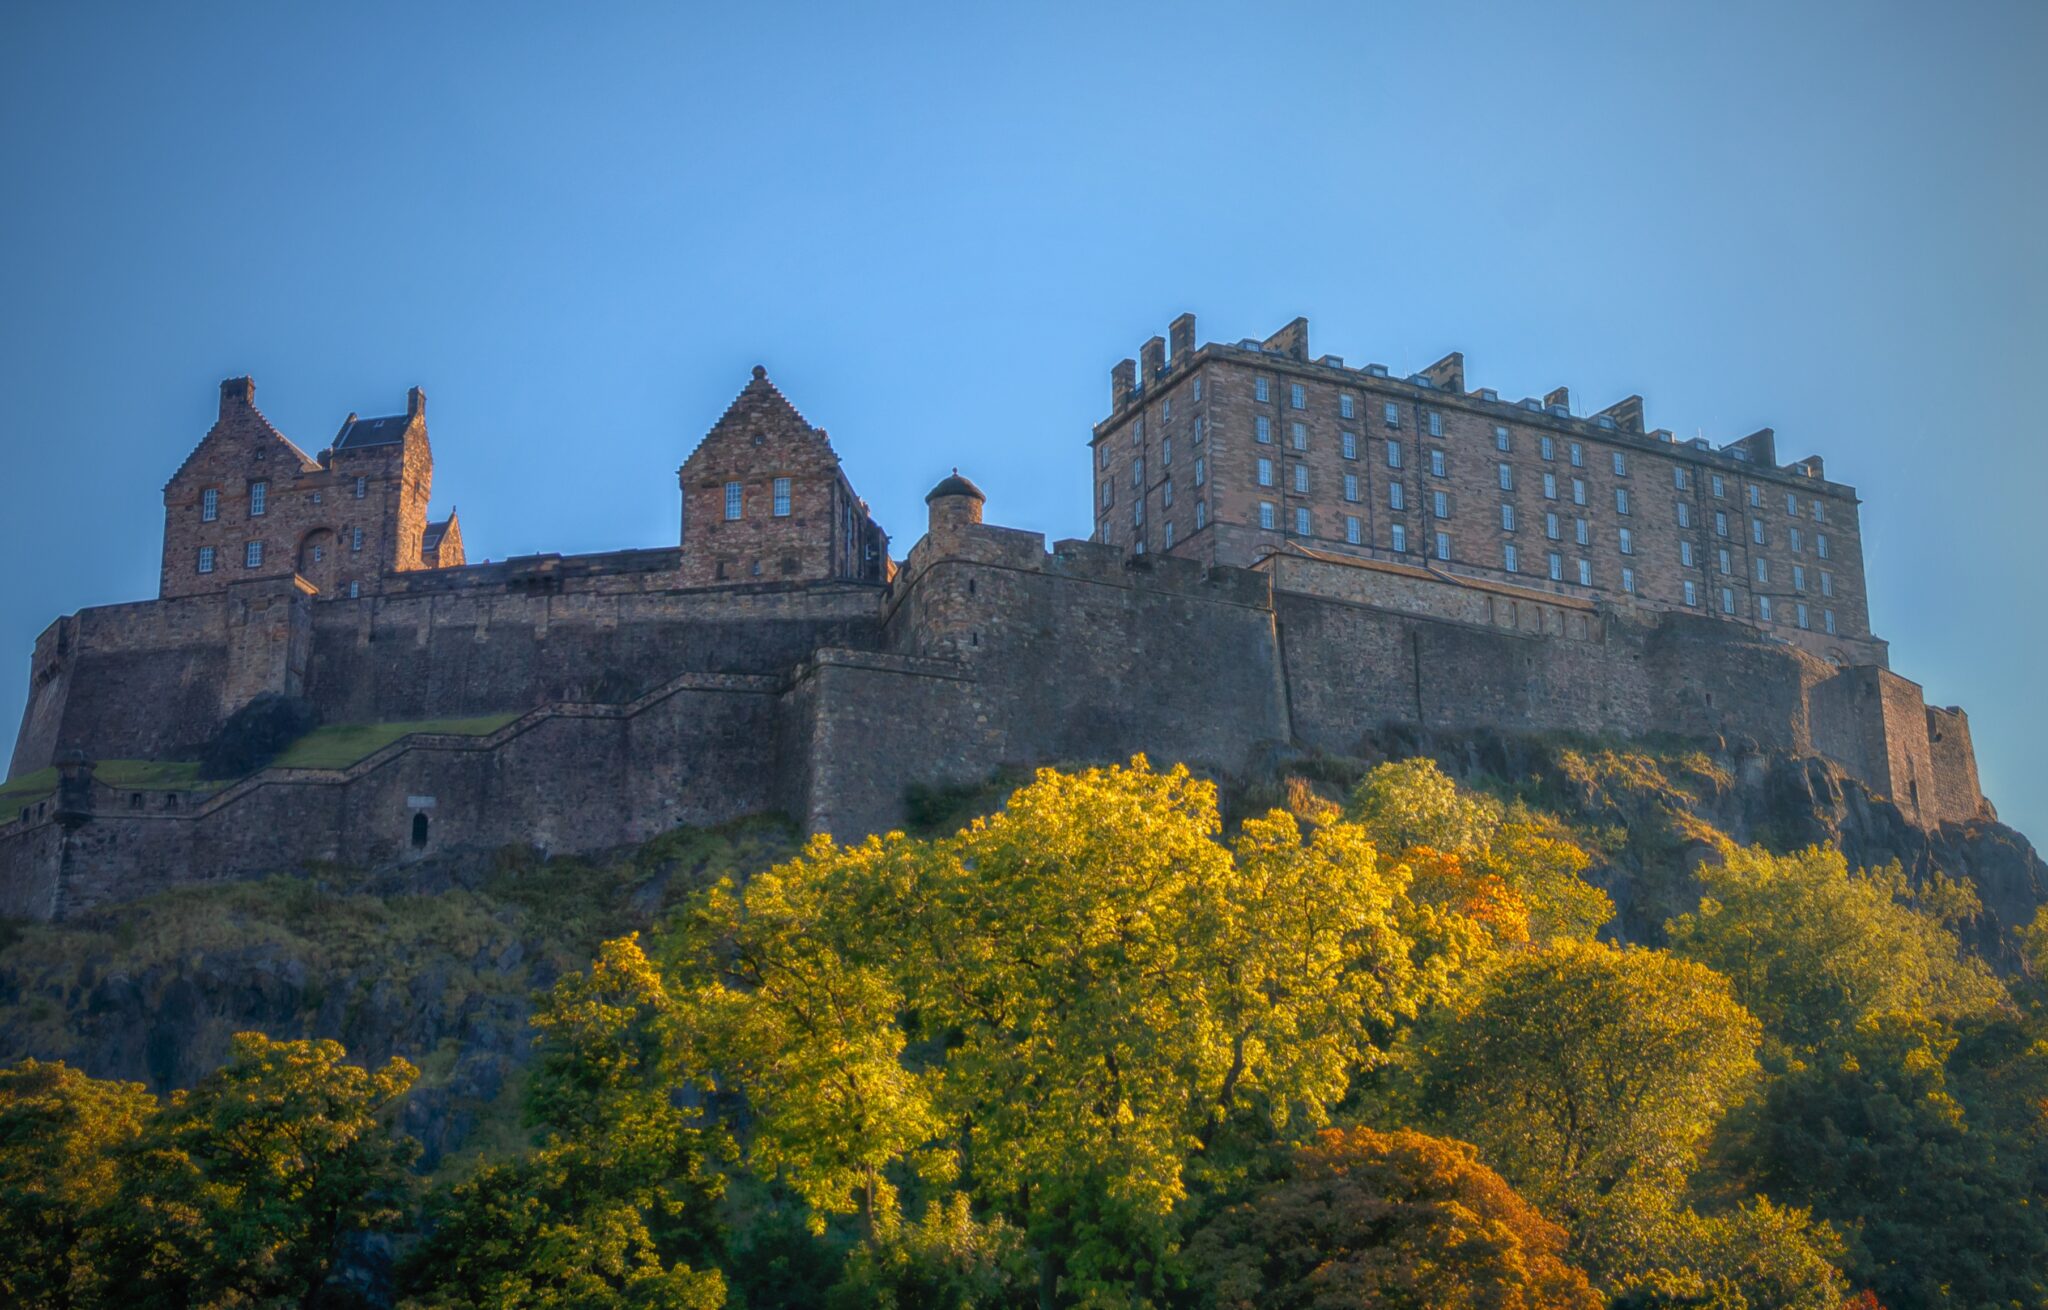 Edinburgh Castle | Image by Walkerssk